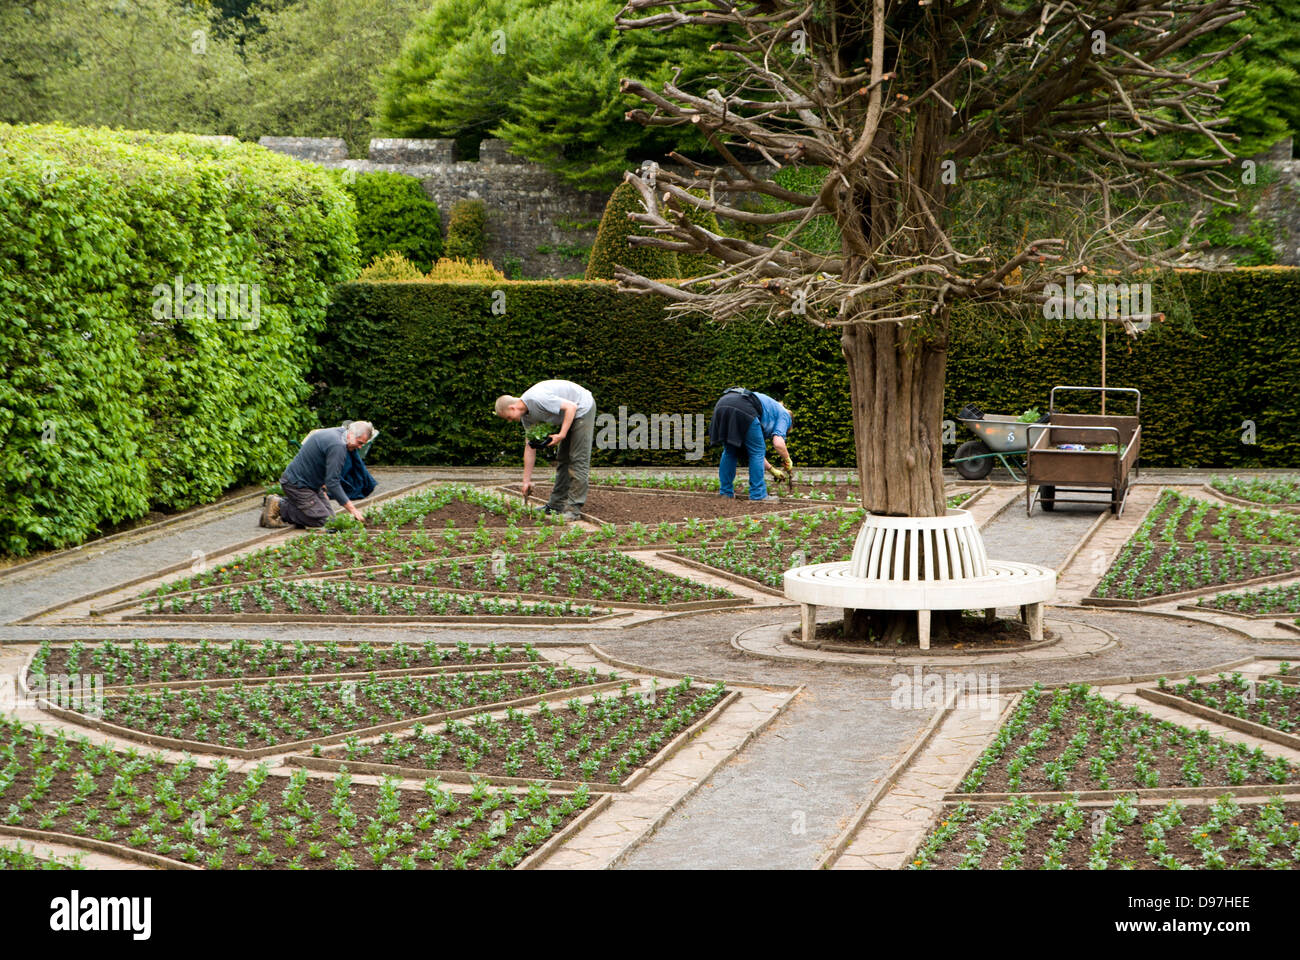 Jardineros trabajando en jardines, museo de historia nacional St Fagans/werin amgueddfa cymru, Cardiff, Gales. Foto de stock